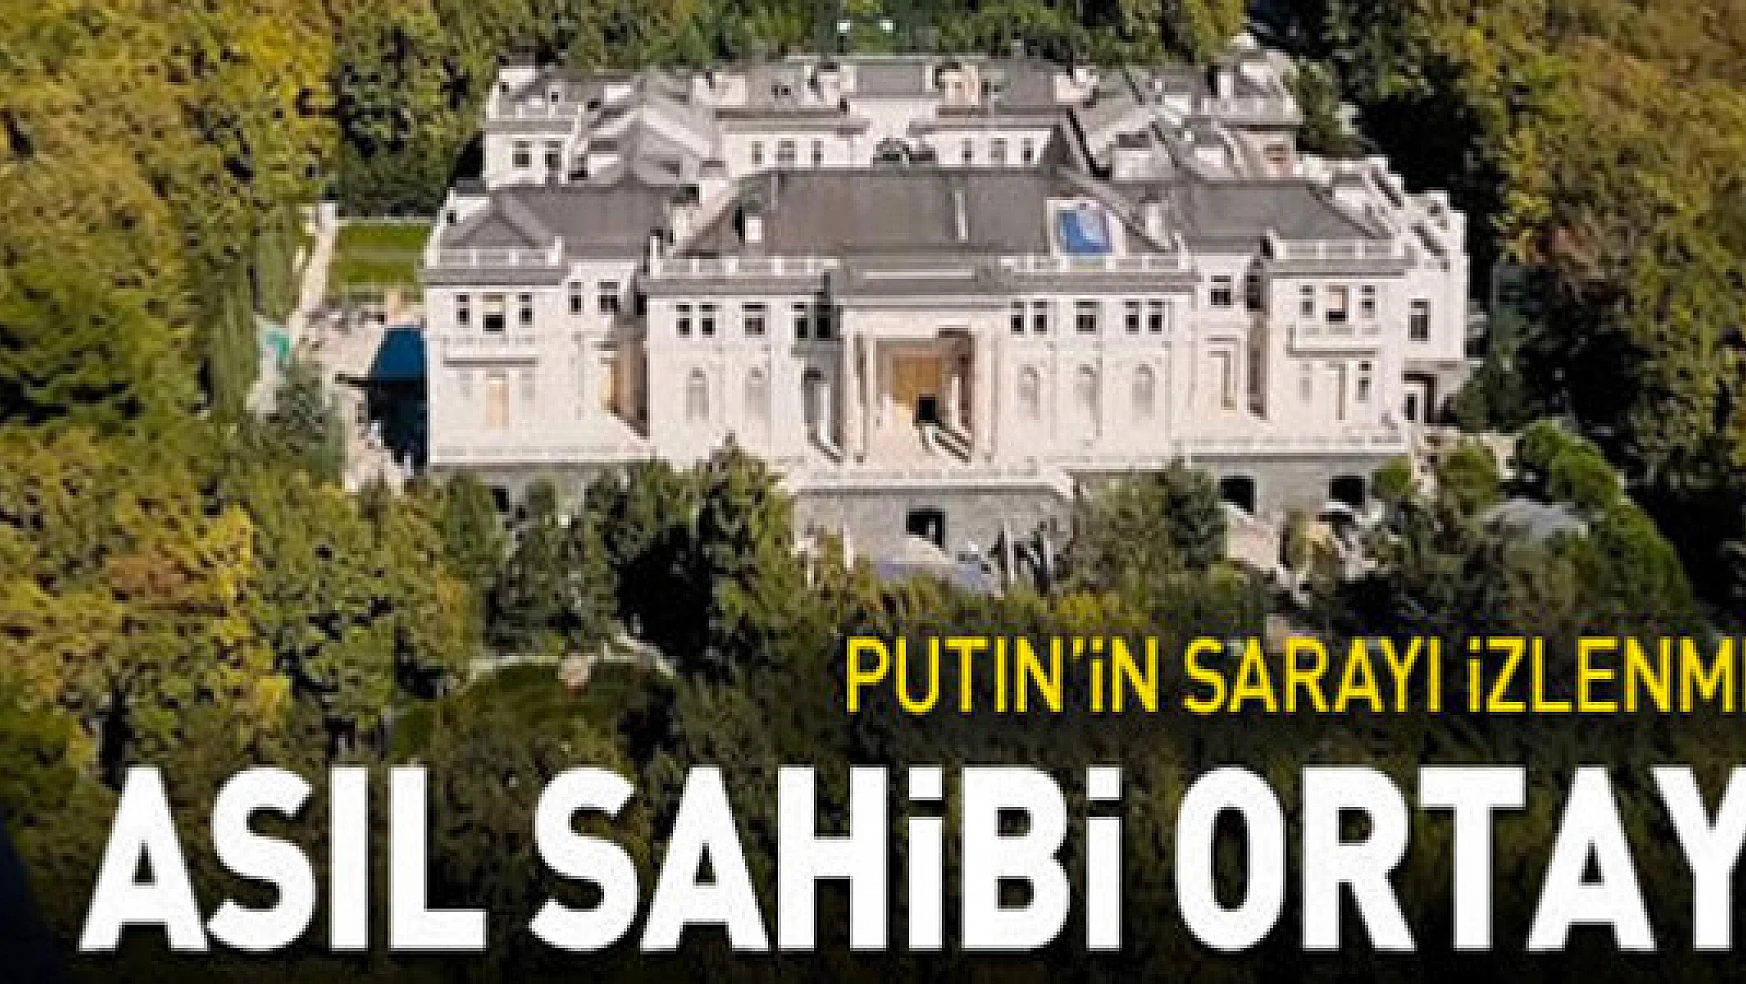 'Putin'in Sarayı'nın videosu 100 milyondan fazla izlenmişti: Gerçek sahibi ortaya çıktı!